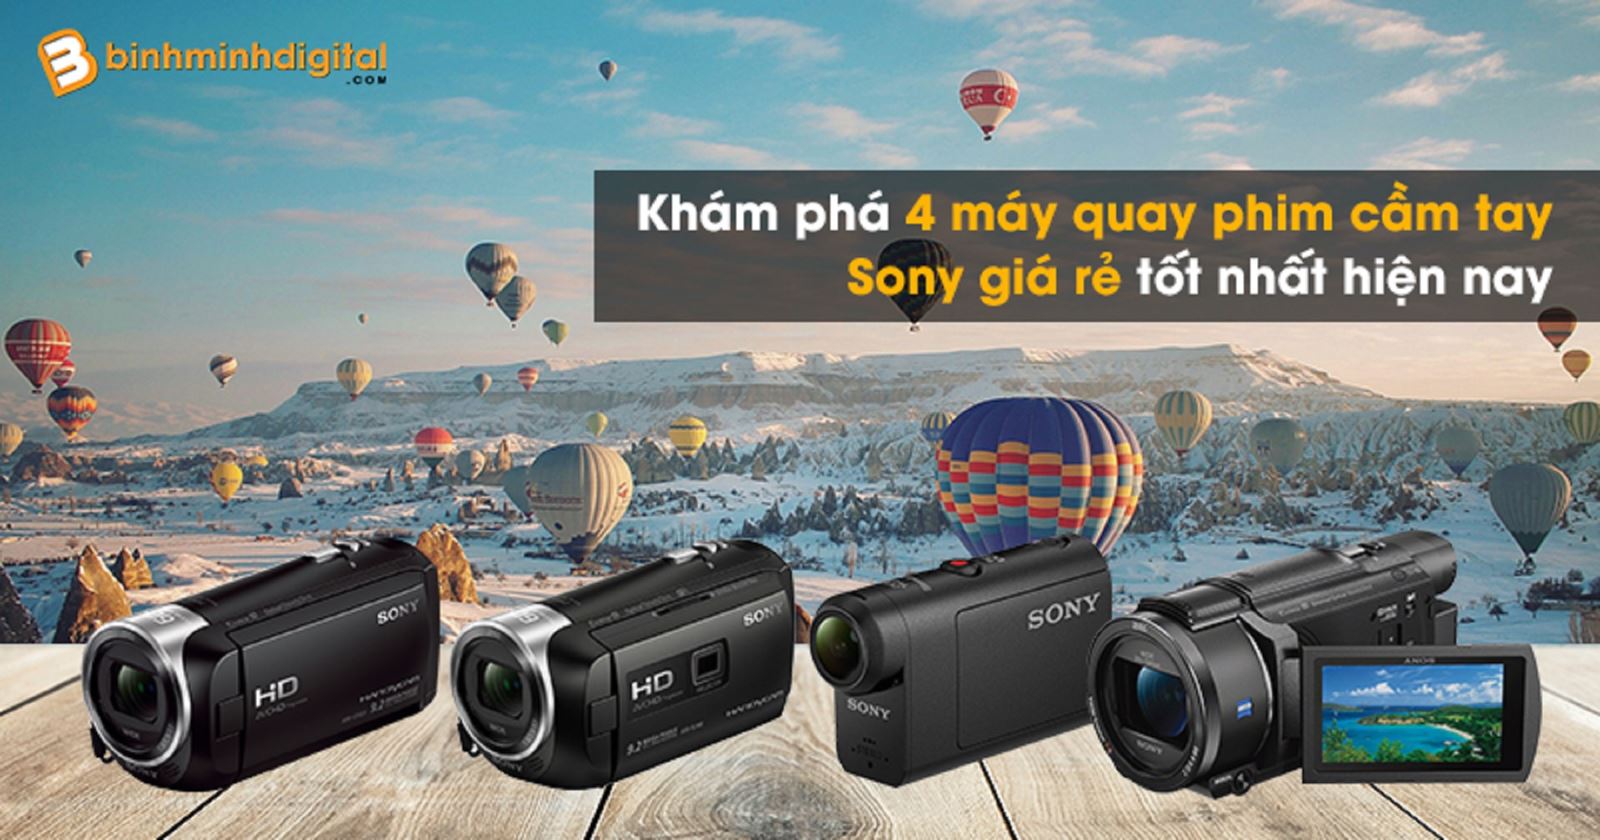 Khám phá 4 máy quay phim cầm tay Sony giá rẻ tốt nhất hiện nay